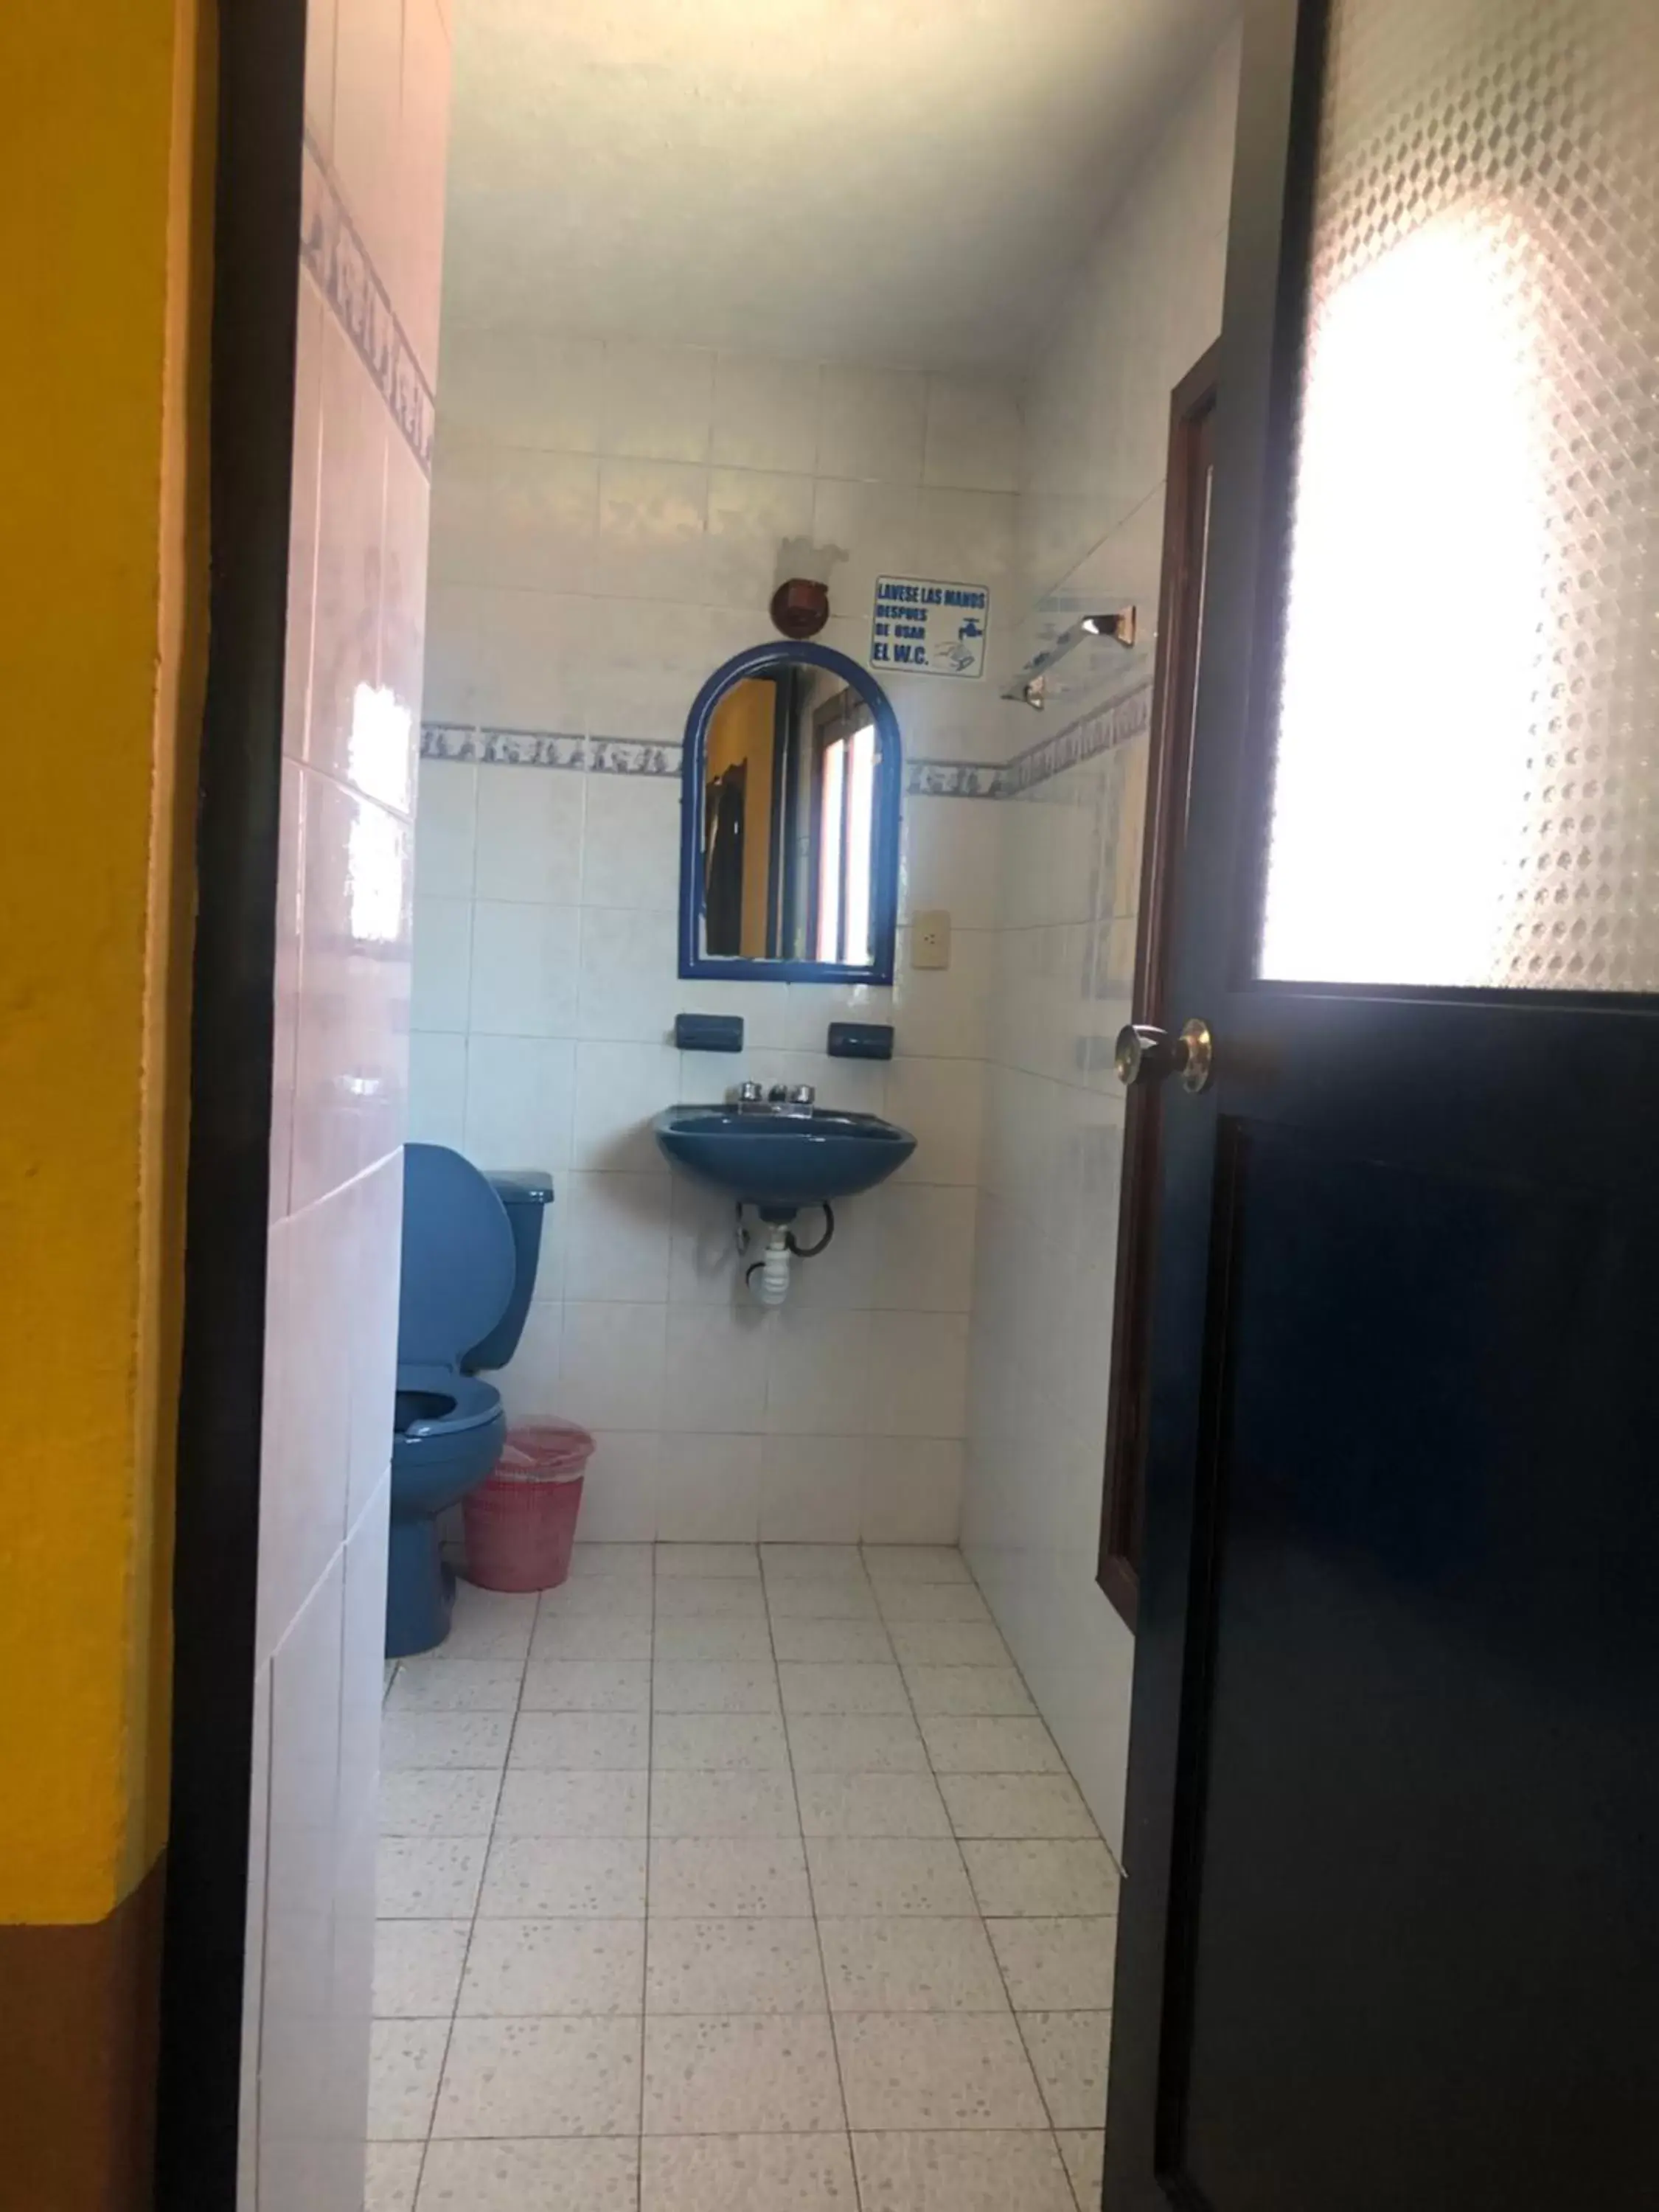 Bathroom in San Pablo